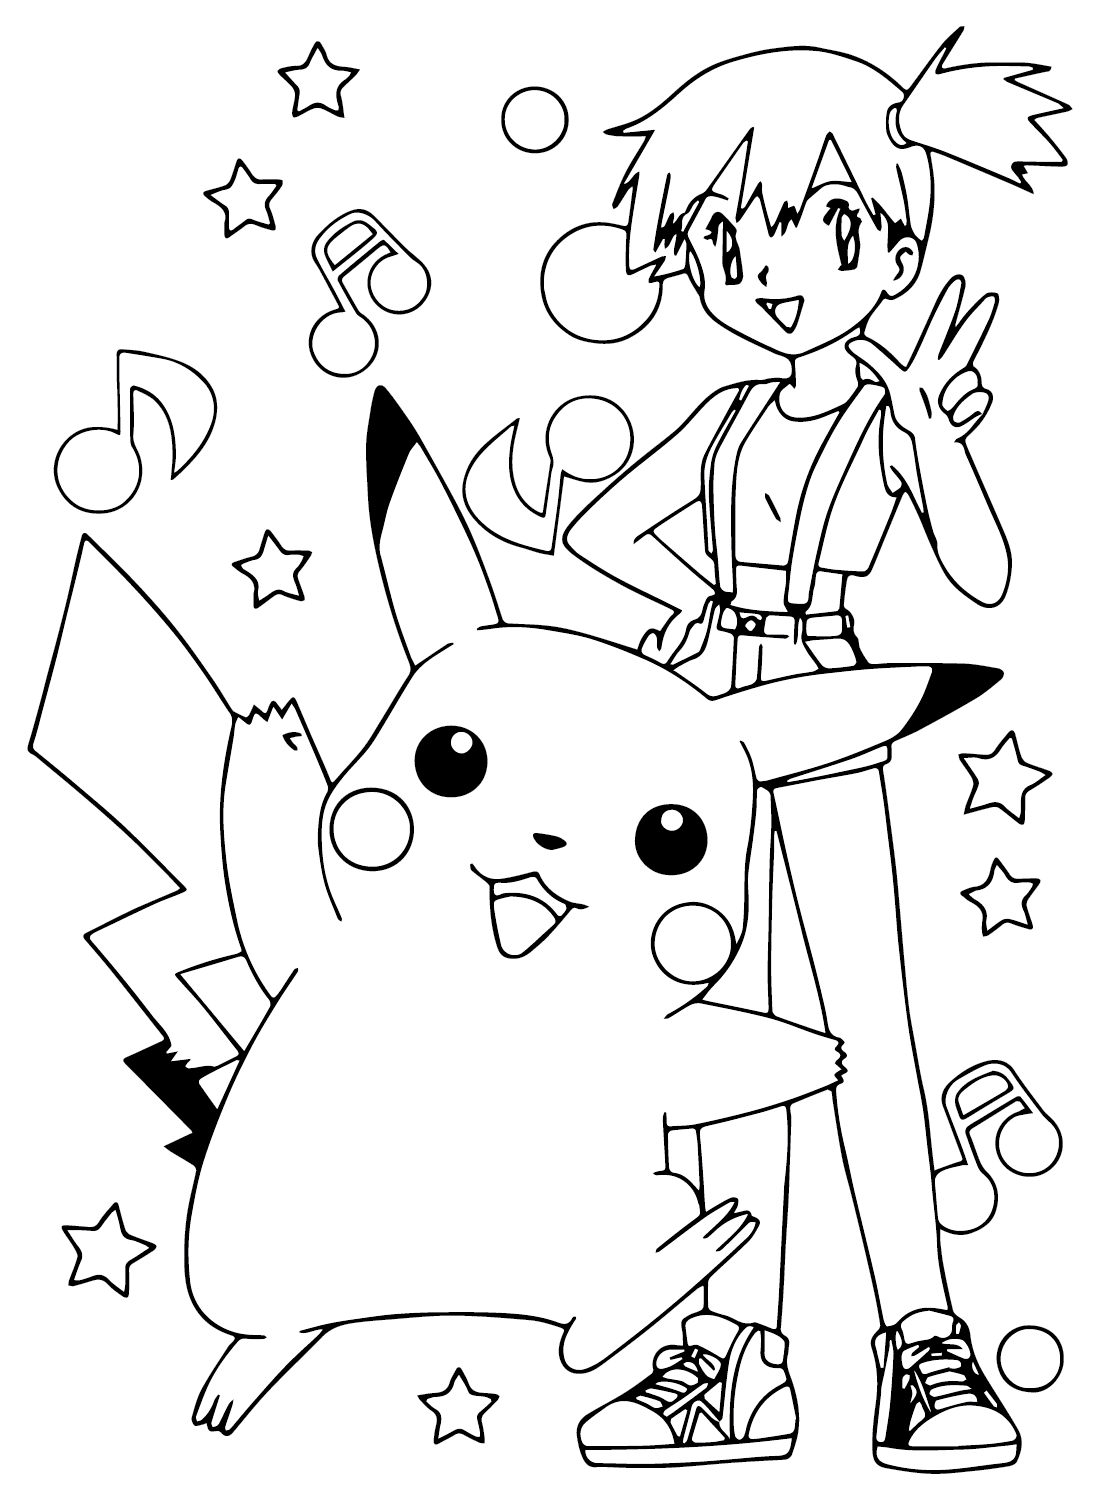 Pagina da colorare di Misty con Pikachu